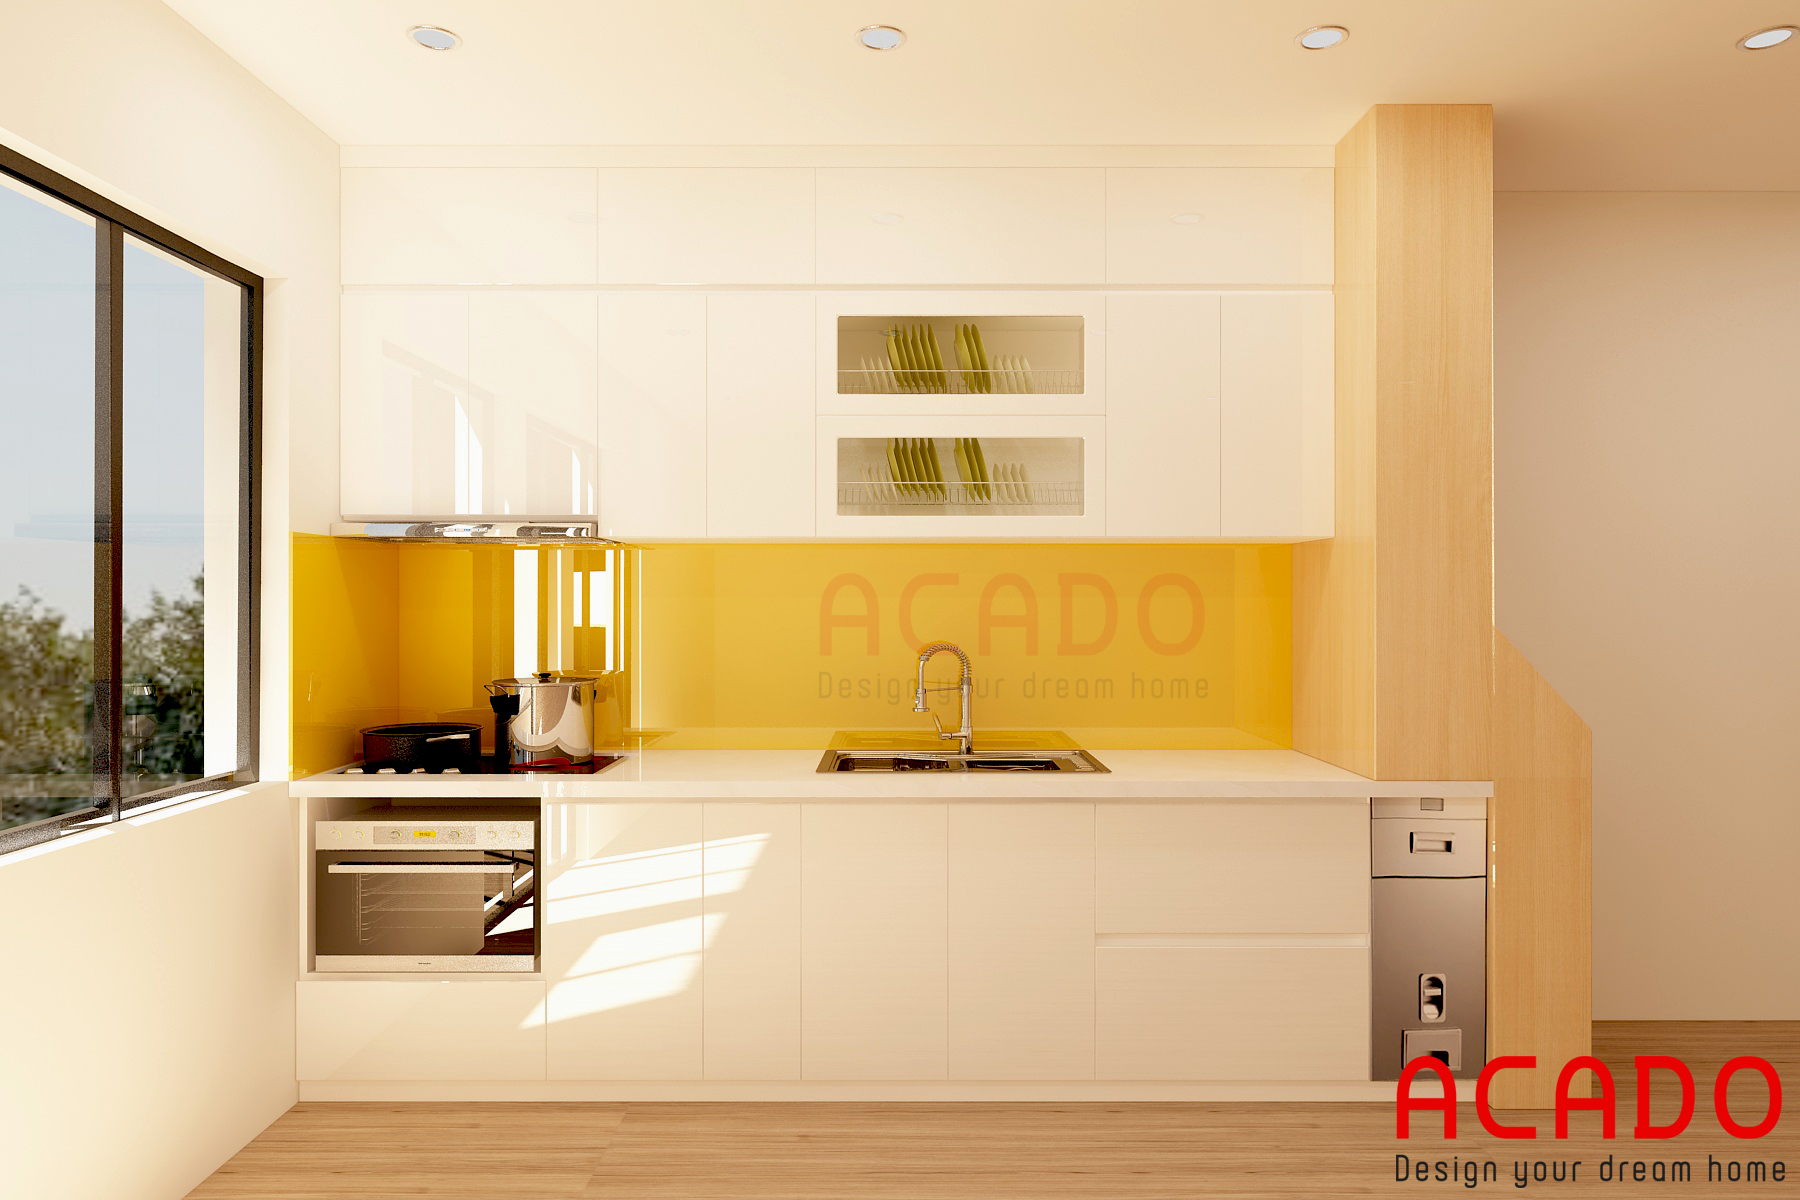 Nội thất Acado cung cấp các mẫu tủ bếp hợp phong thủy giá rẻ, chất lượng nhất Hà Nội.